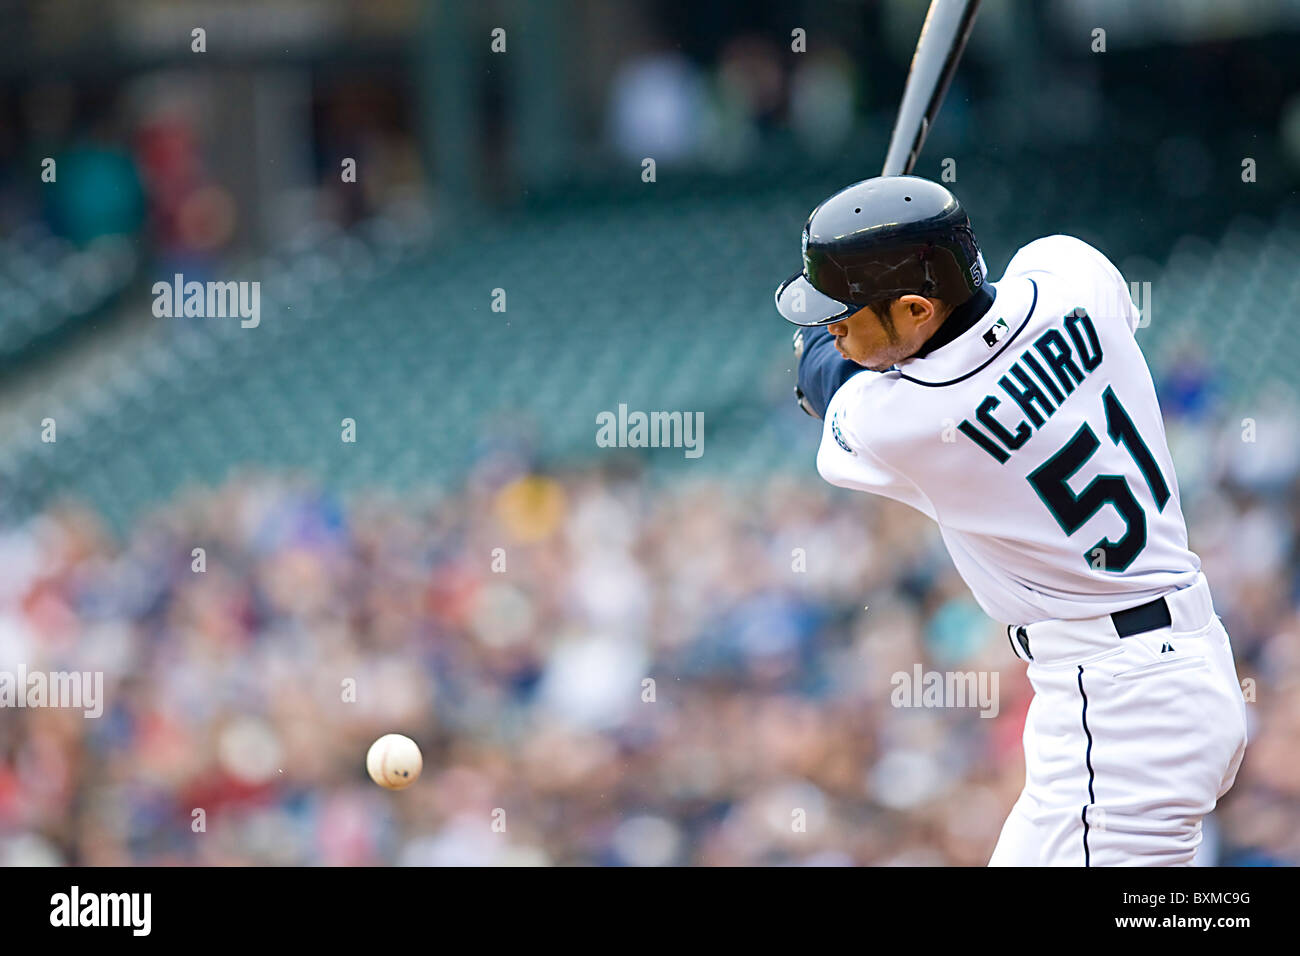 Seattle Mariners Baseball player Ichiro Suzuki batting at Safeco Field Stock Photo